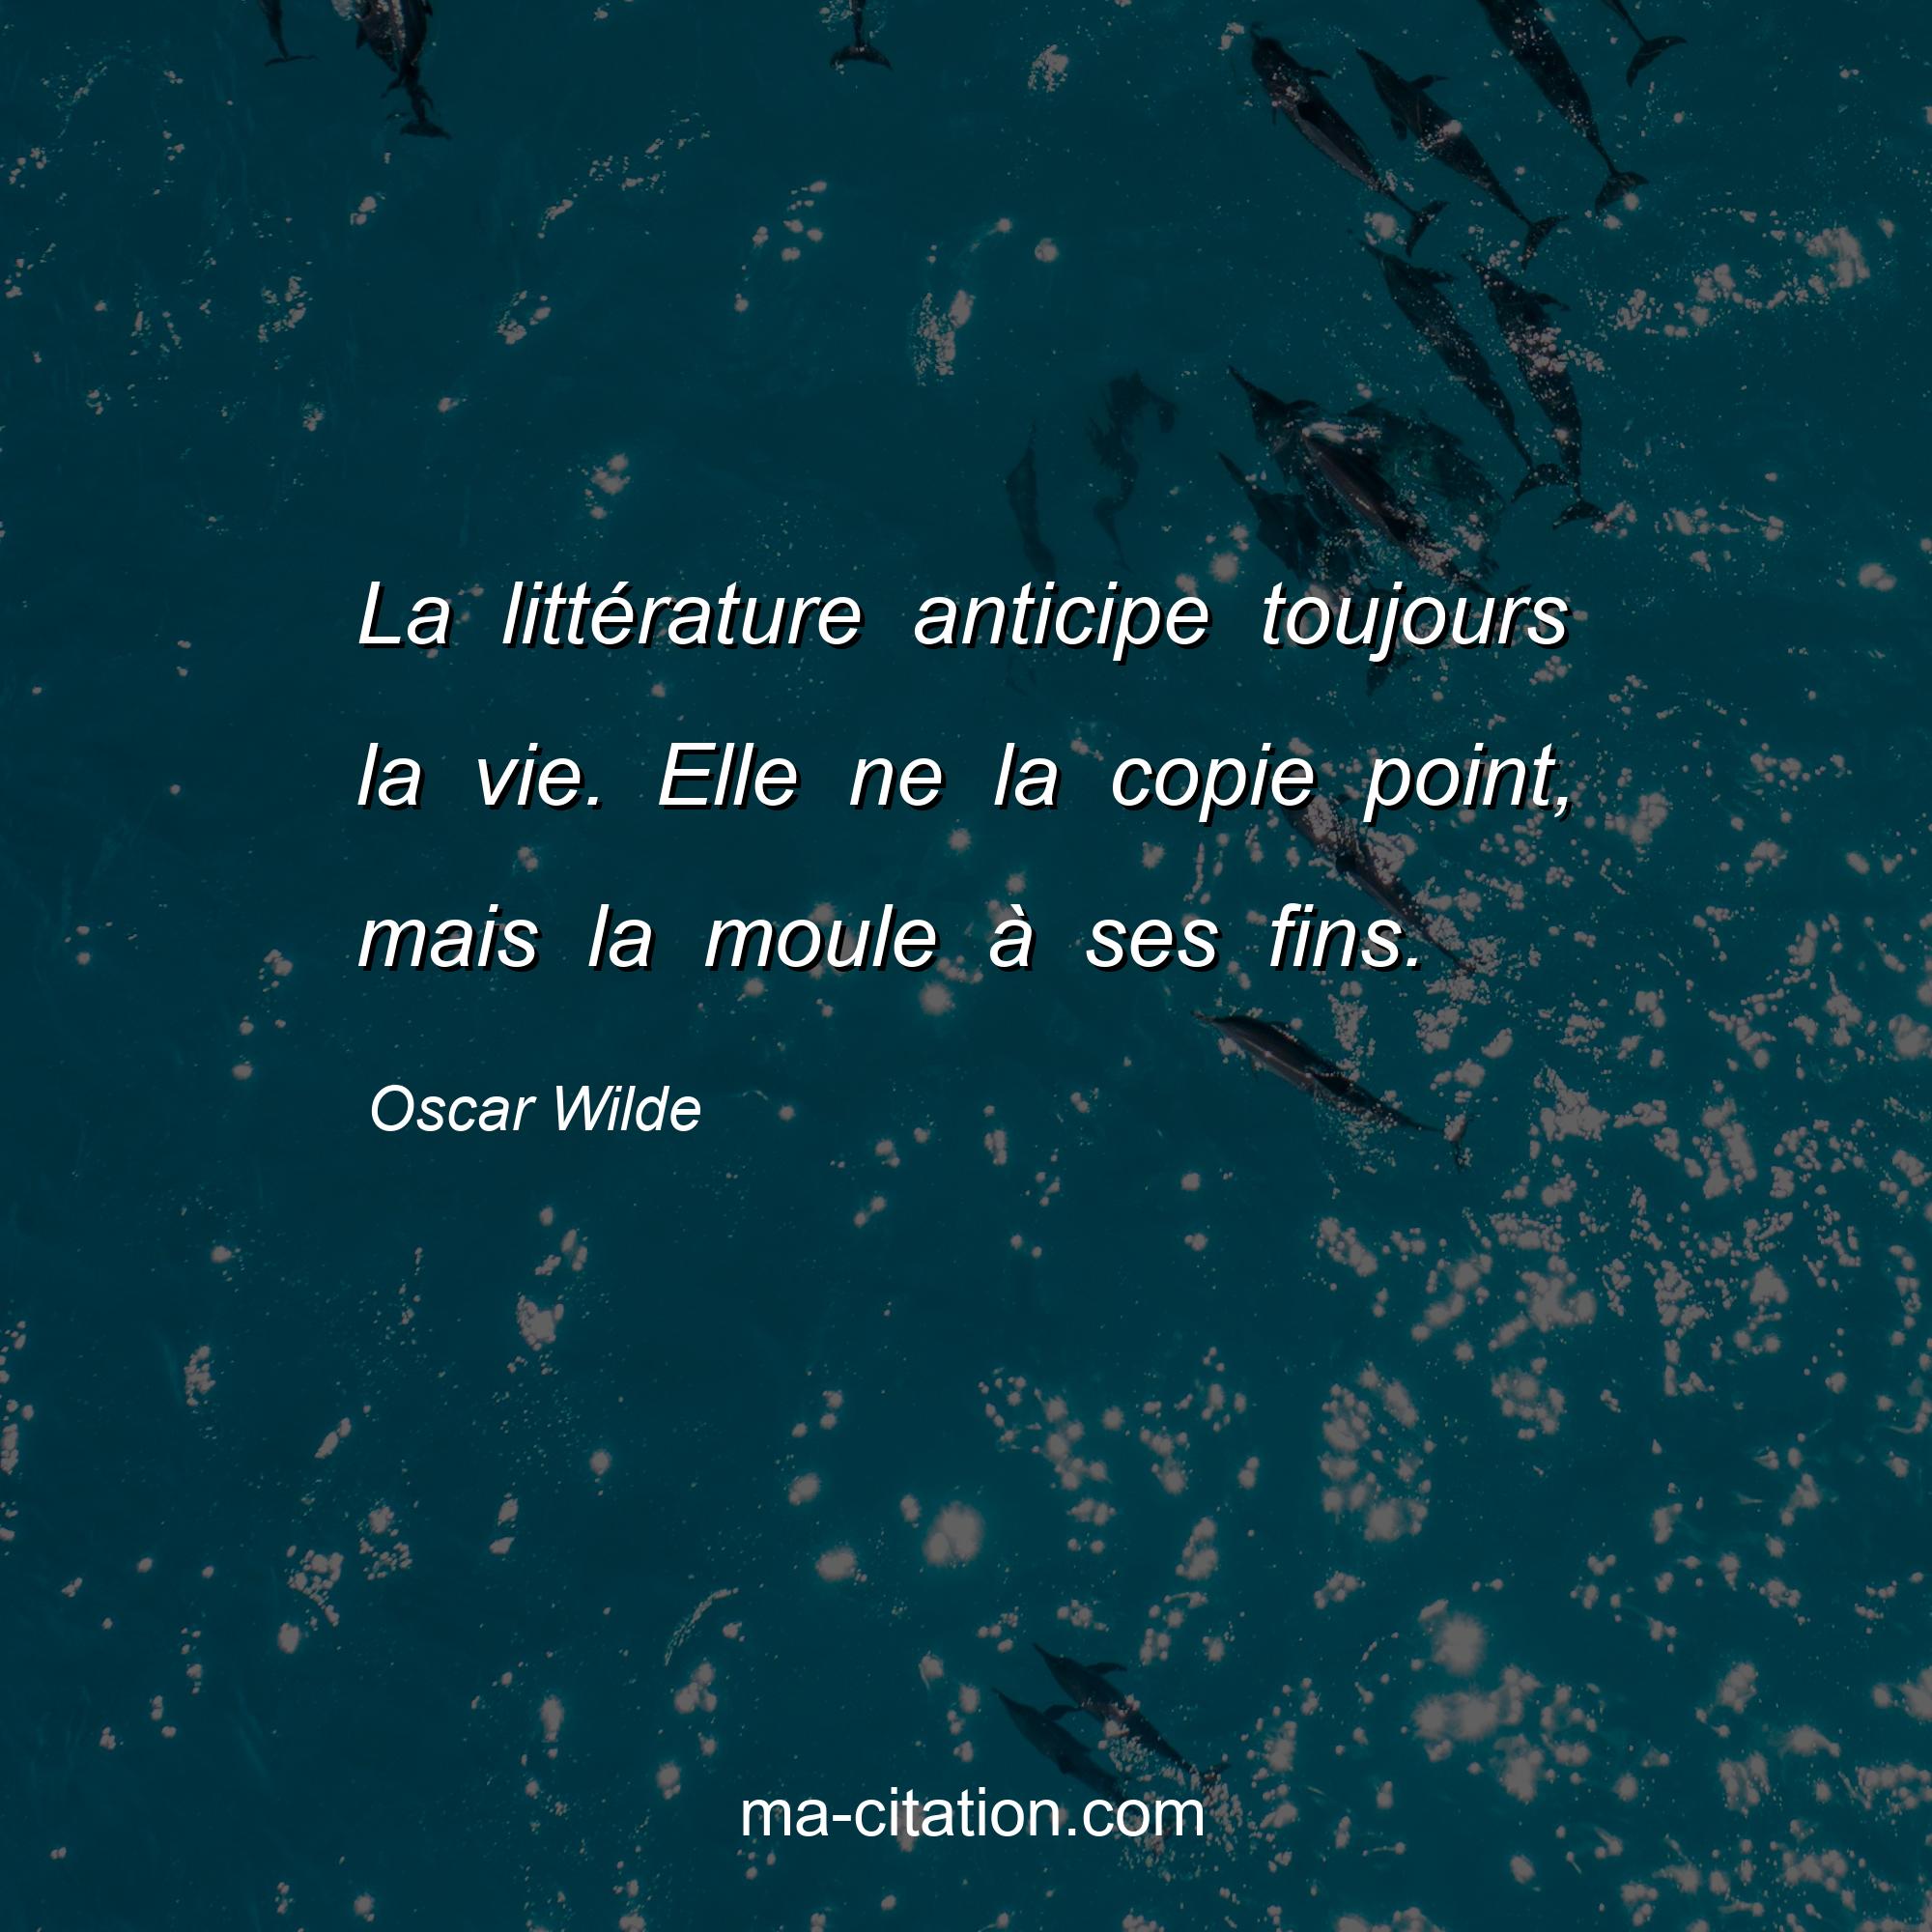 Oscar Wilde : La littérature anticipe toujours la vie. Elle ne la copie point, mais la moule à ses fins.